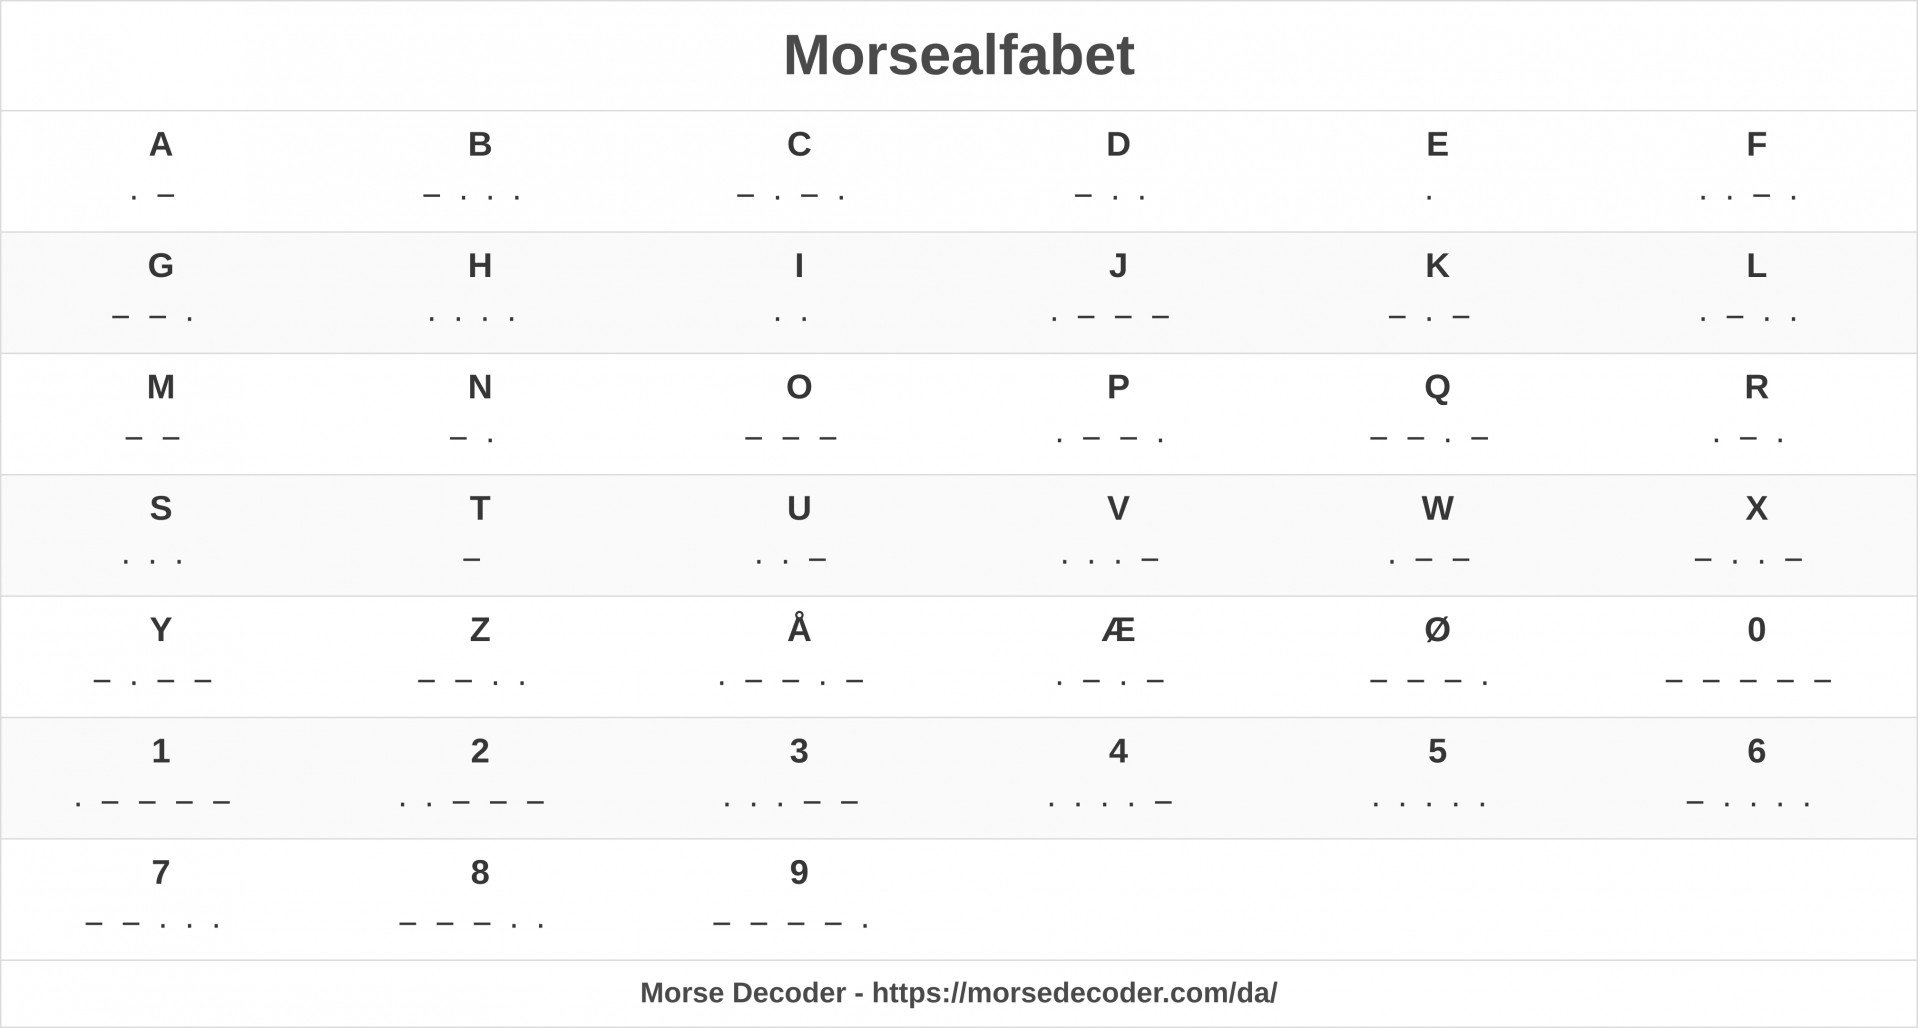 Morsealfabet